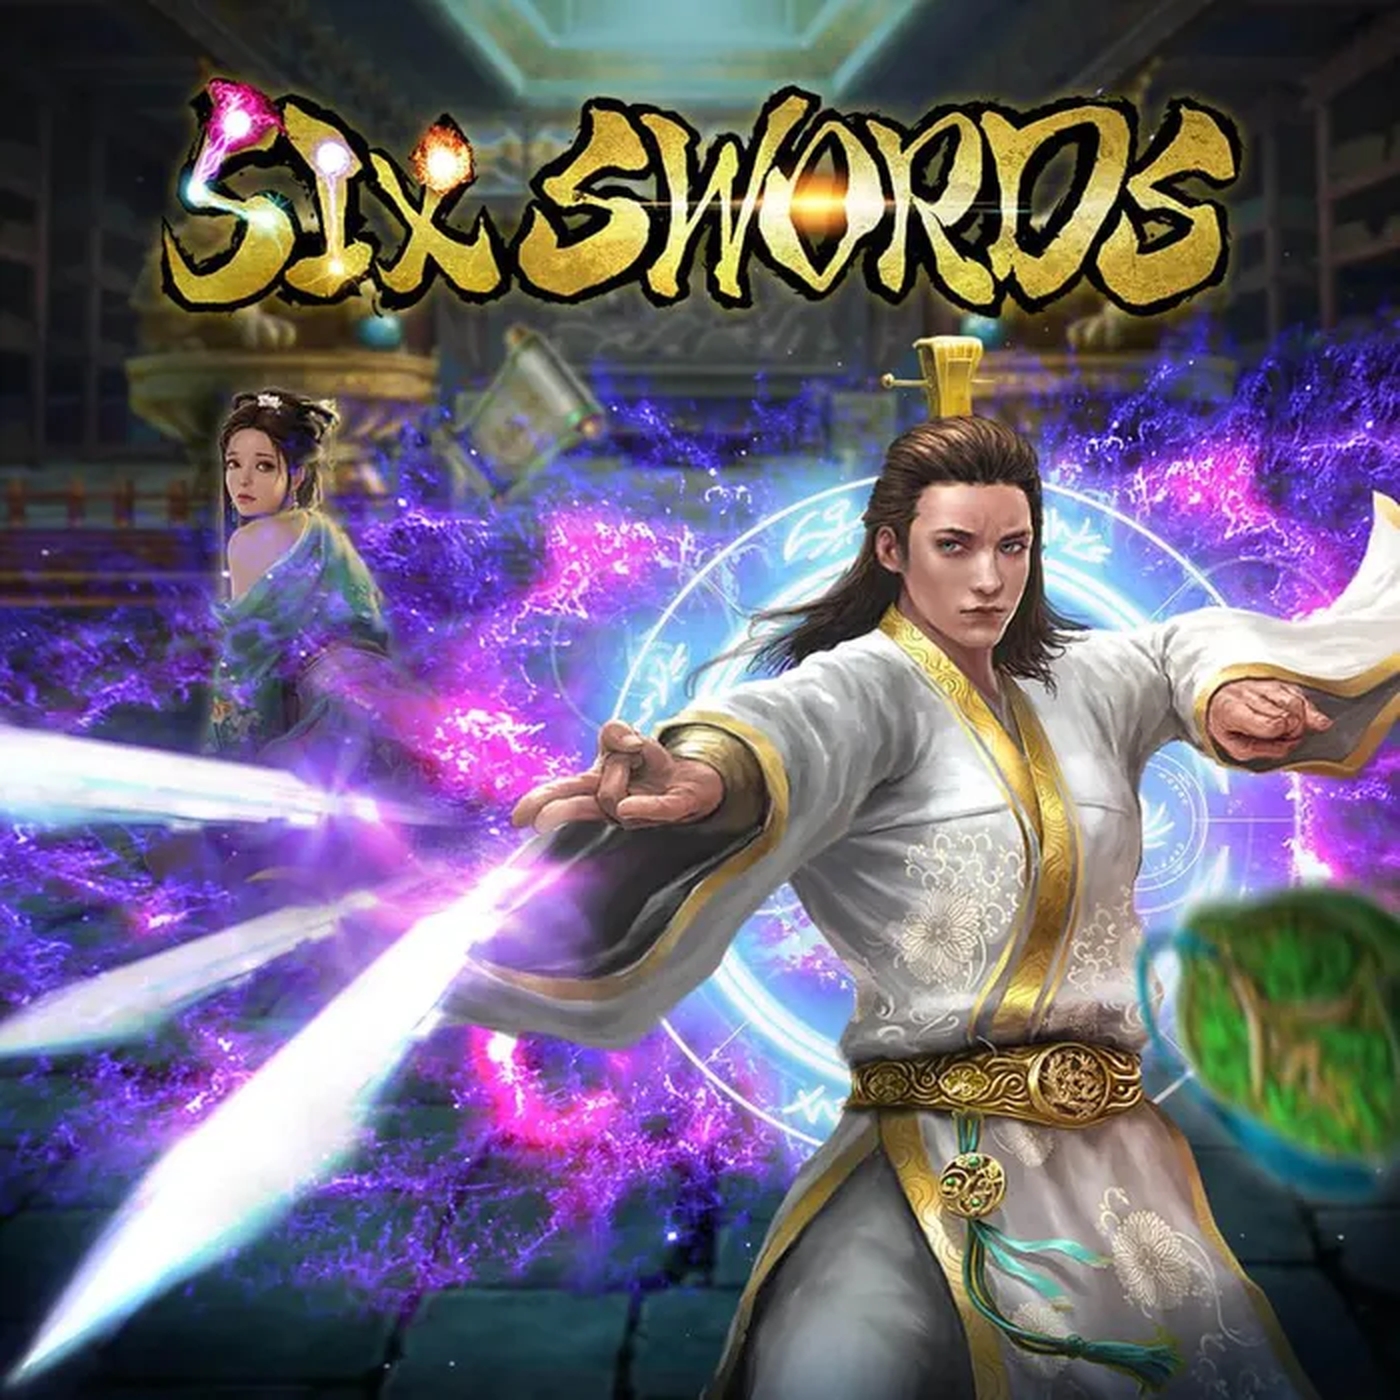 Six Swords demo